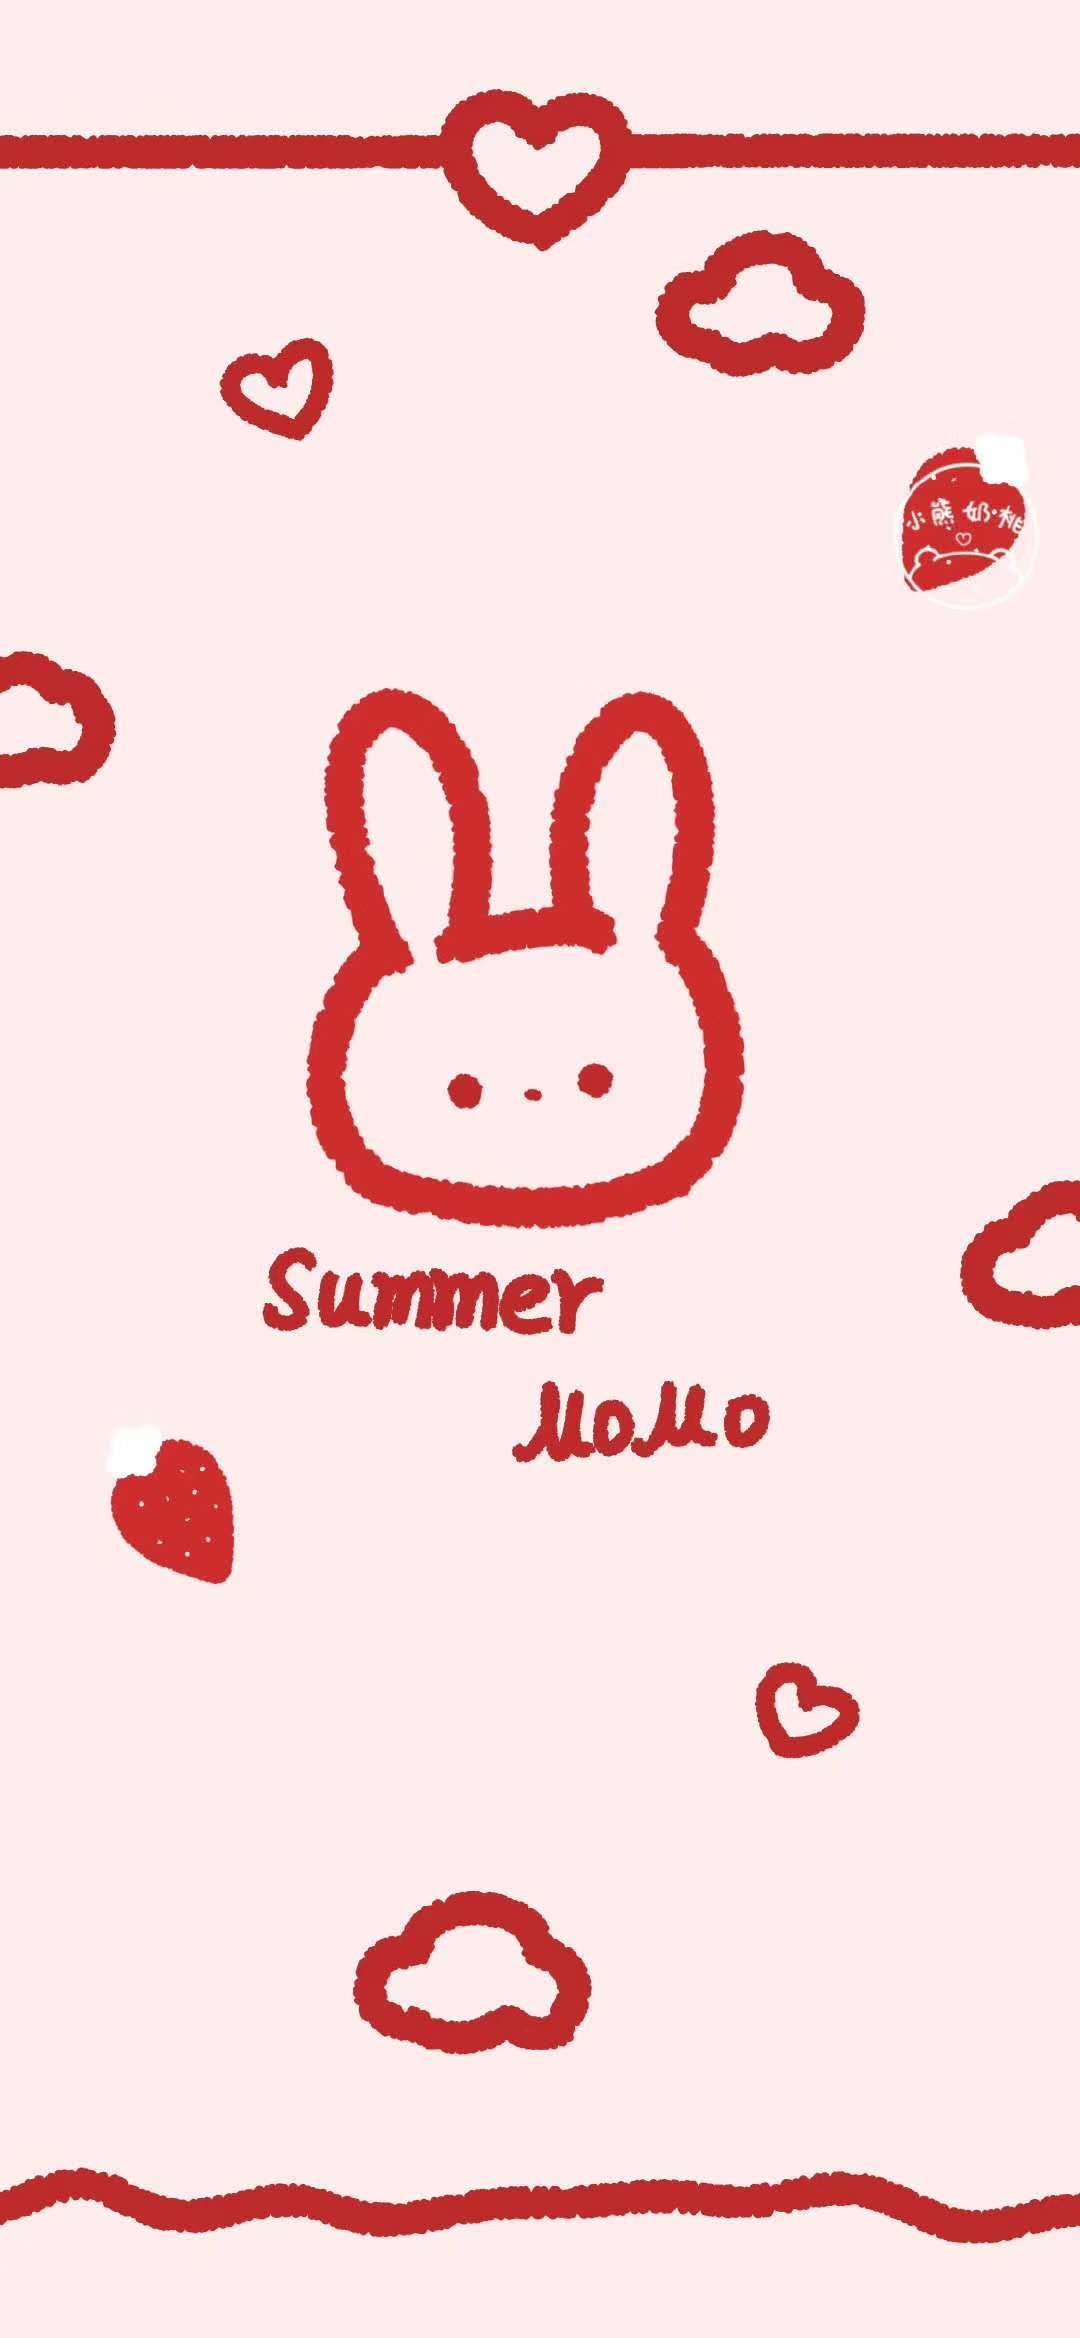 褶皱草莓兔子壁纸图片